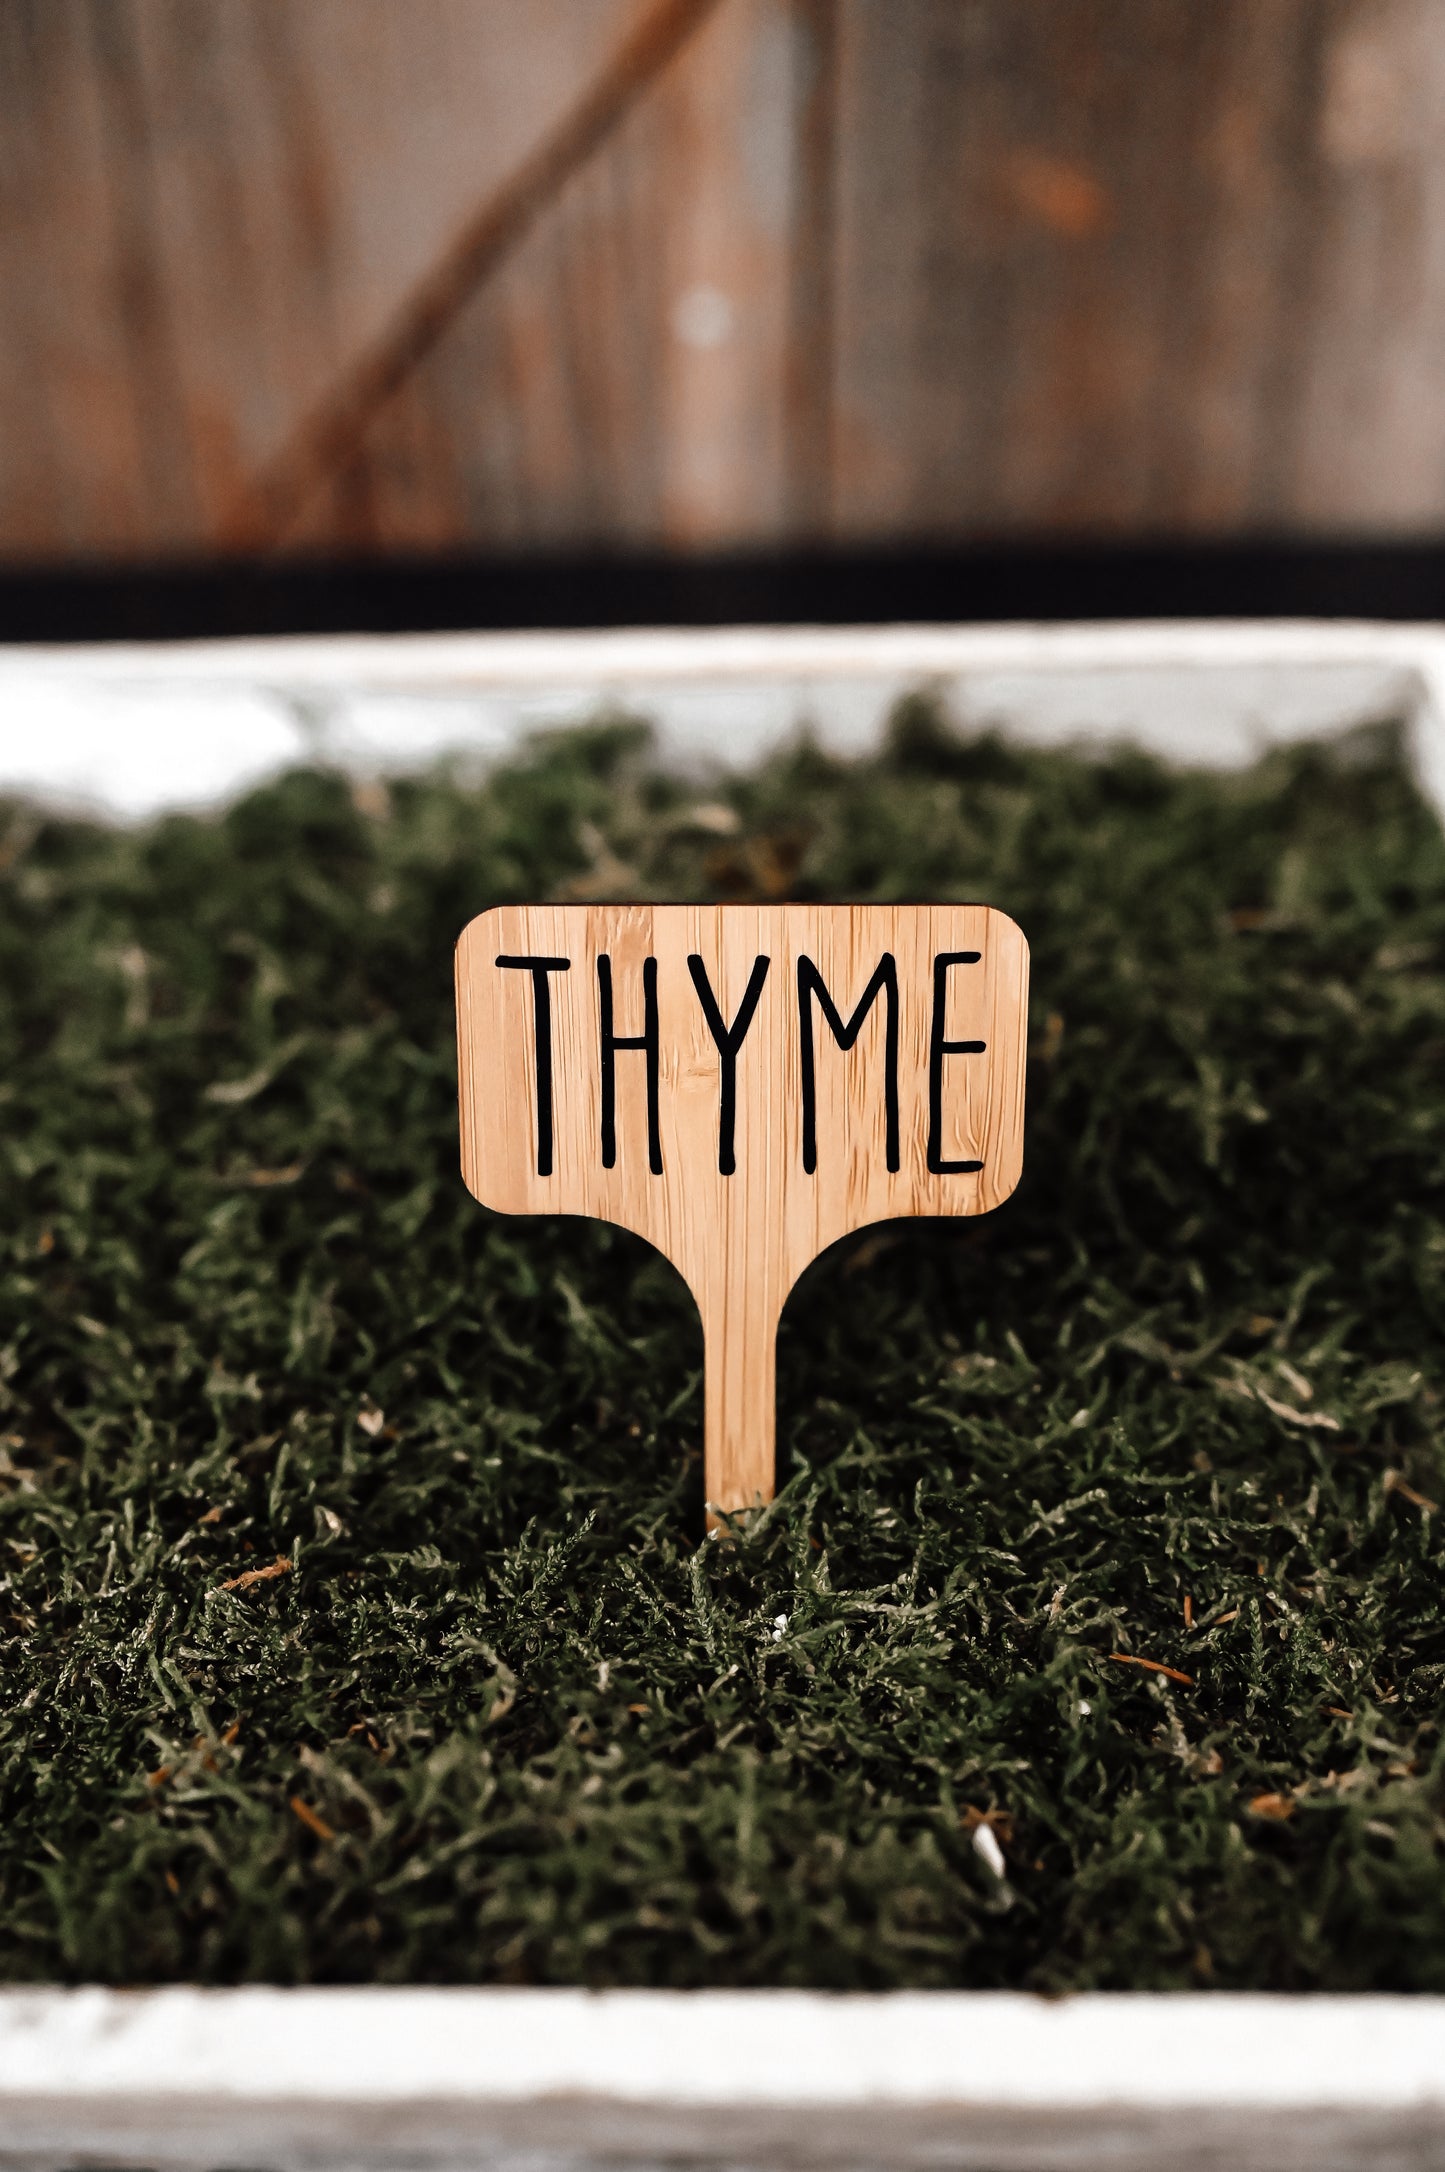 thyme-garden-stake